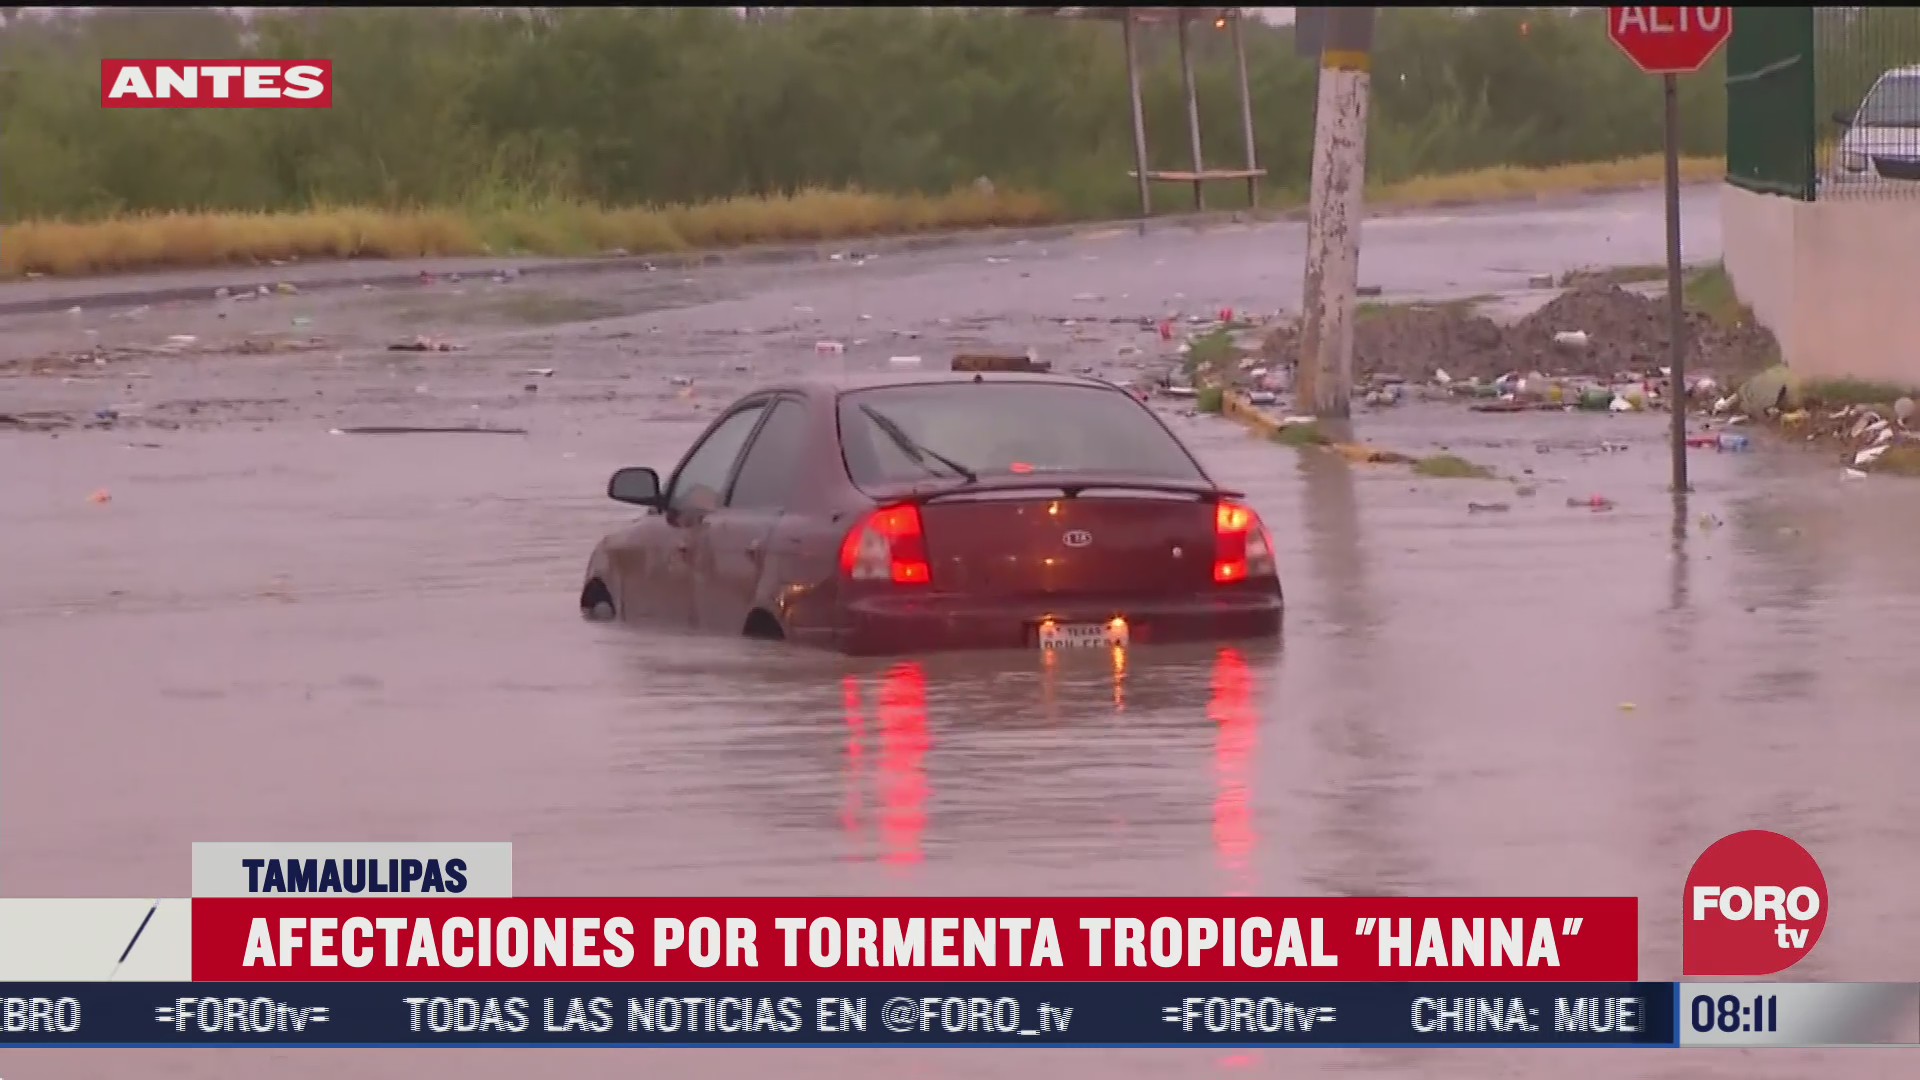 FOTO: 26 de julio 2020, afectaciones por tormenta tropical hanna en tamaulipas